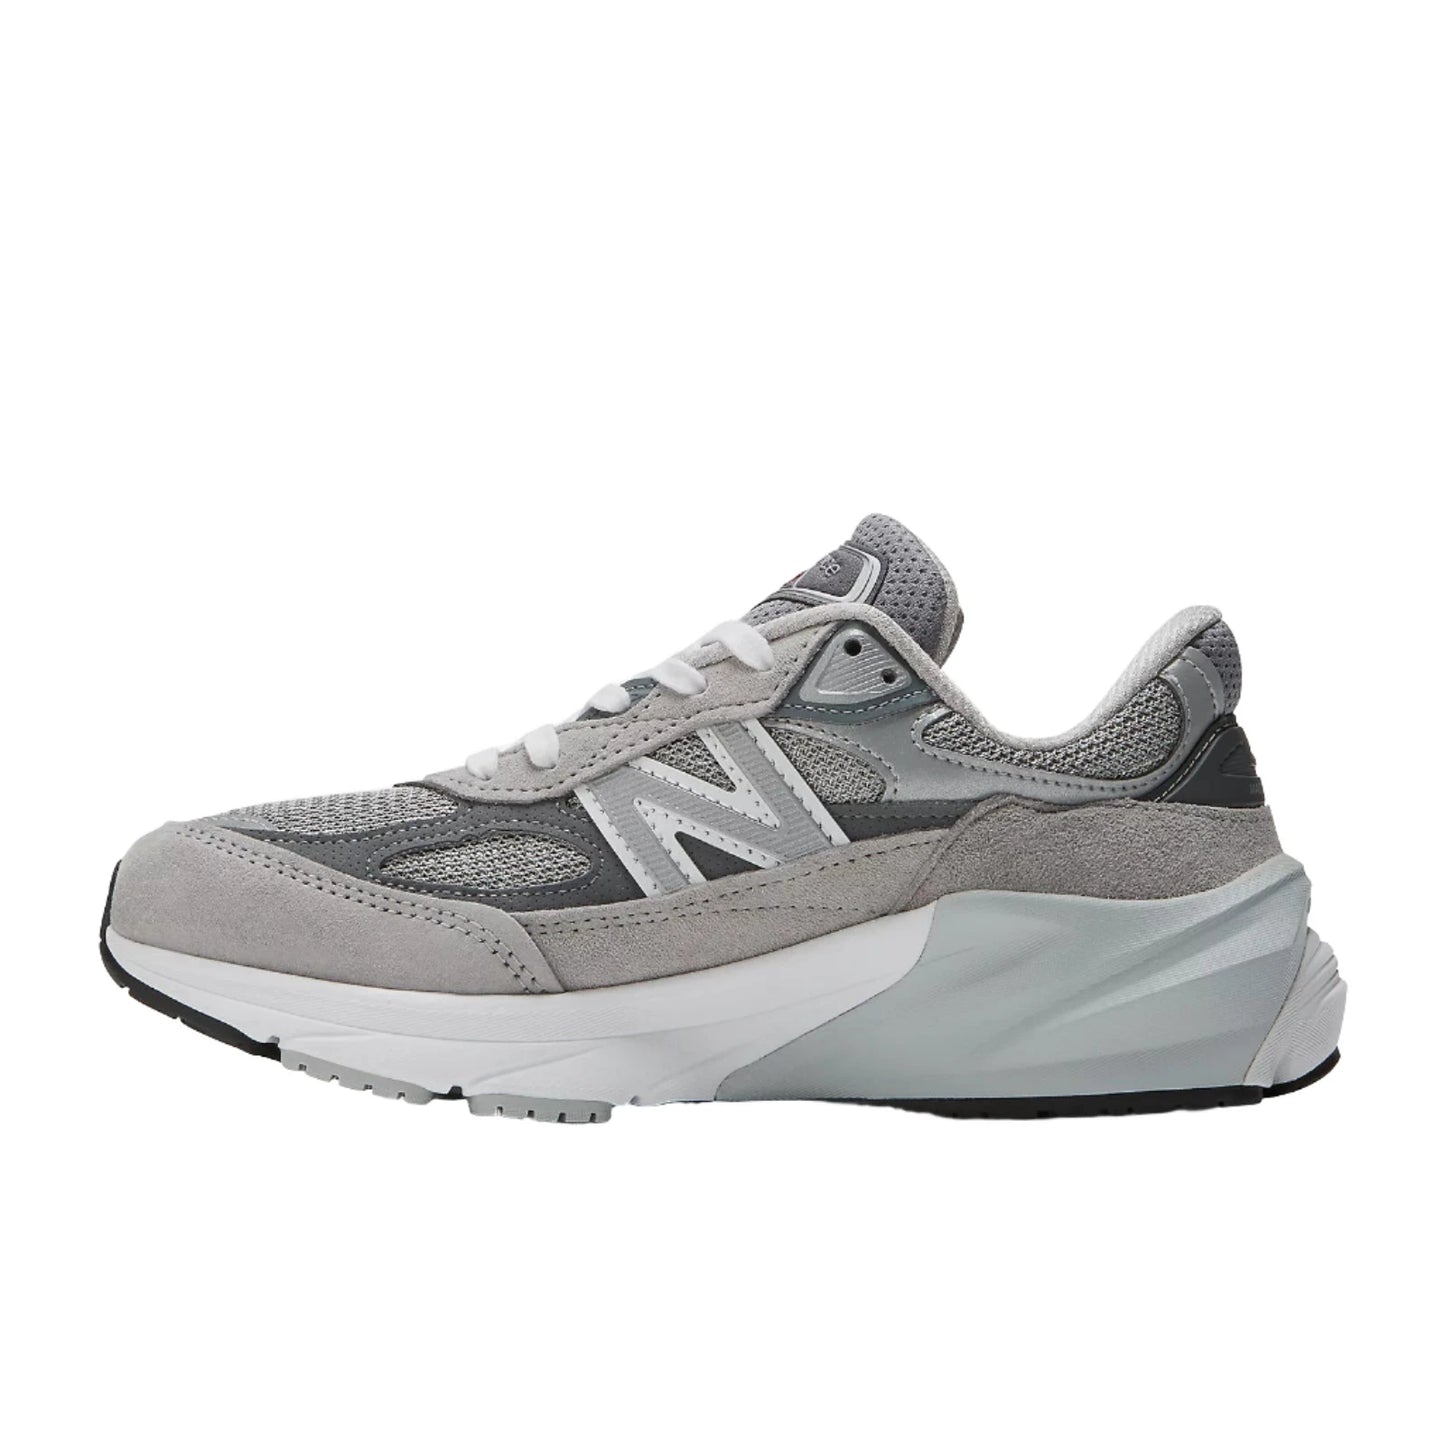 New Balance Women's 990V5 Sneaker - Grey